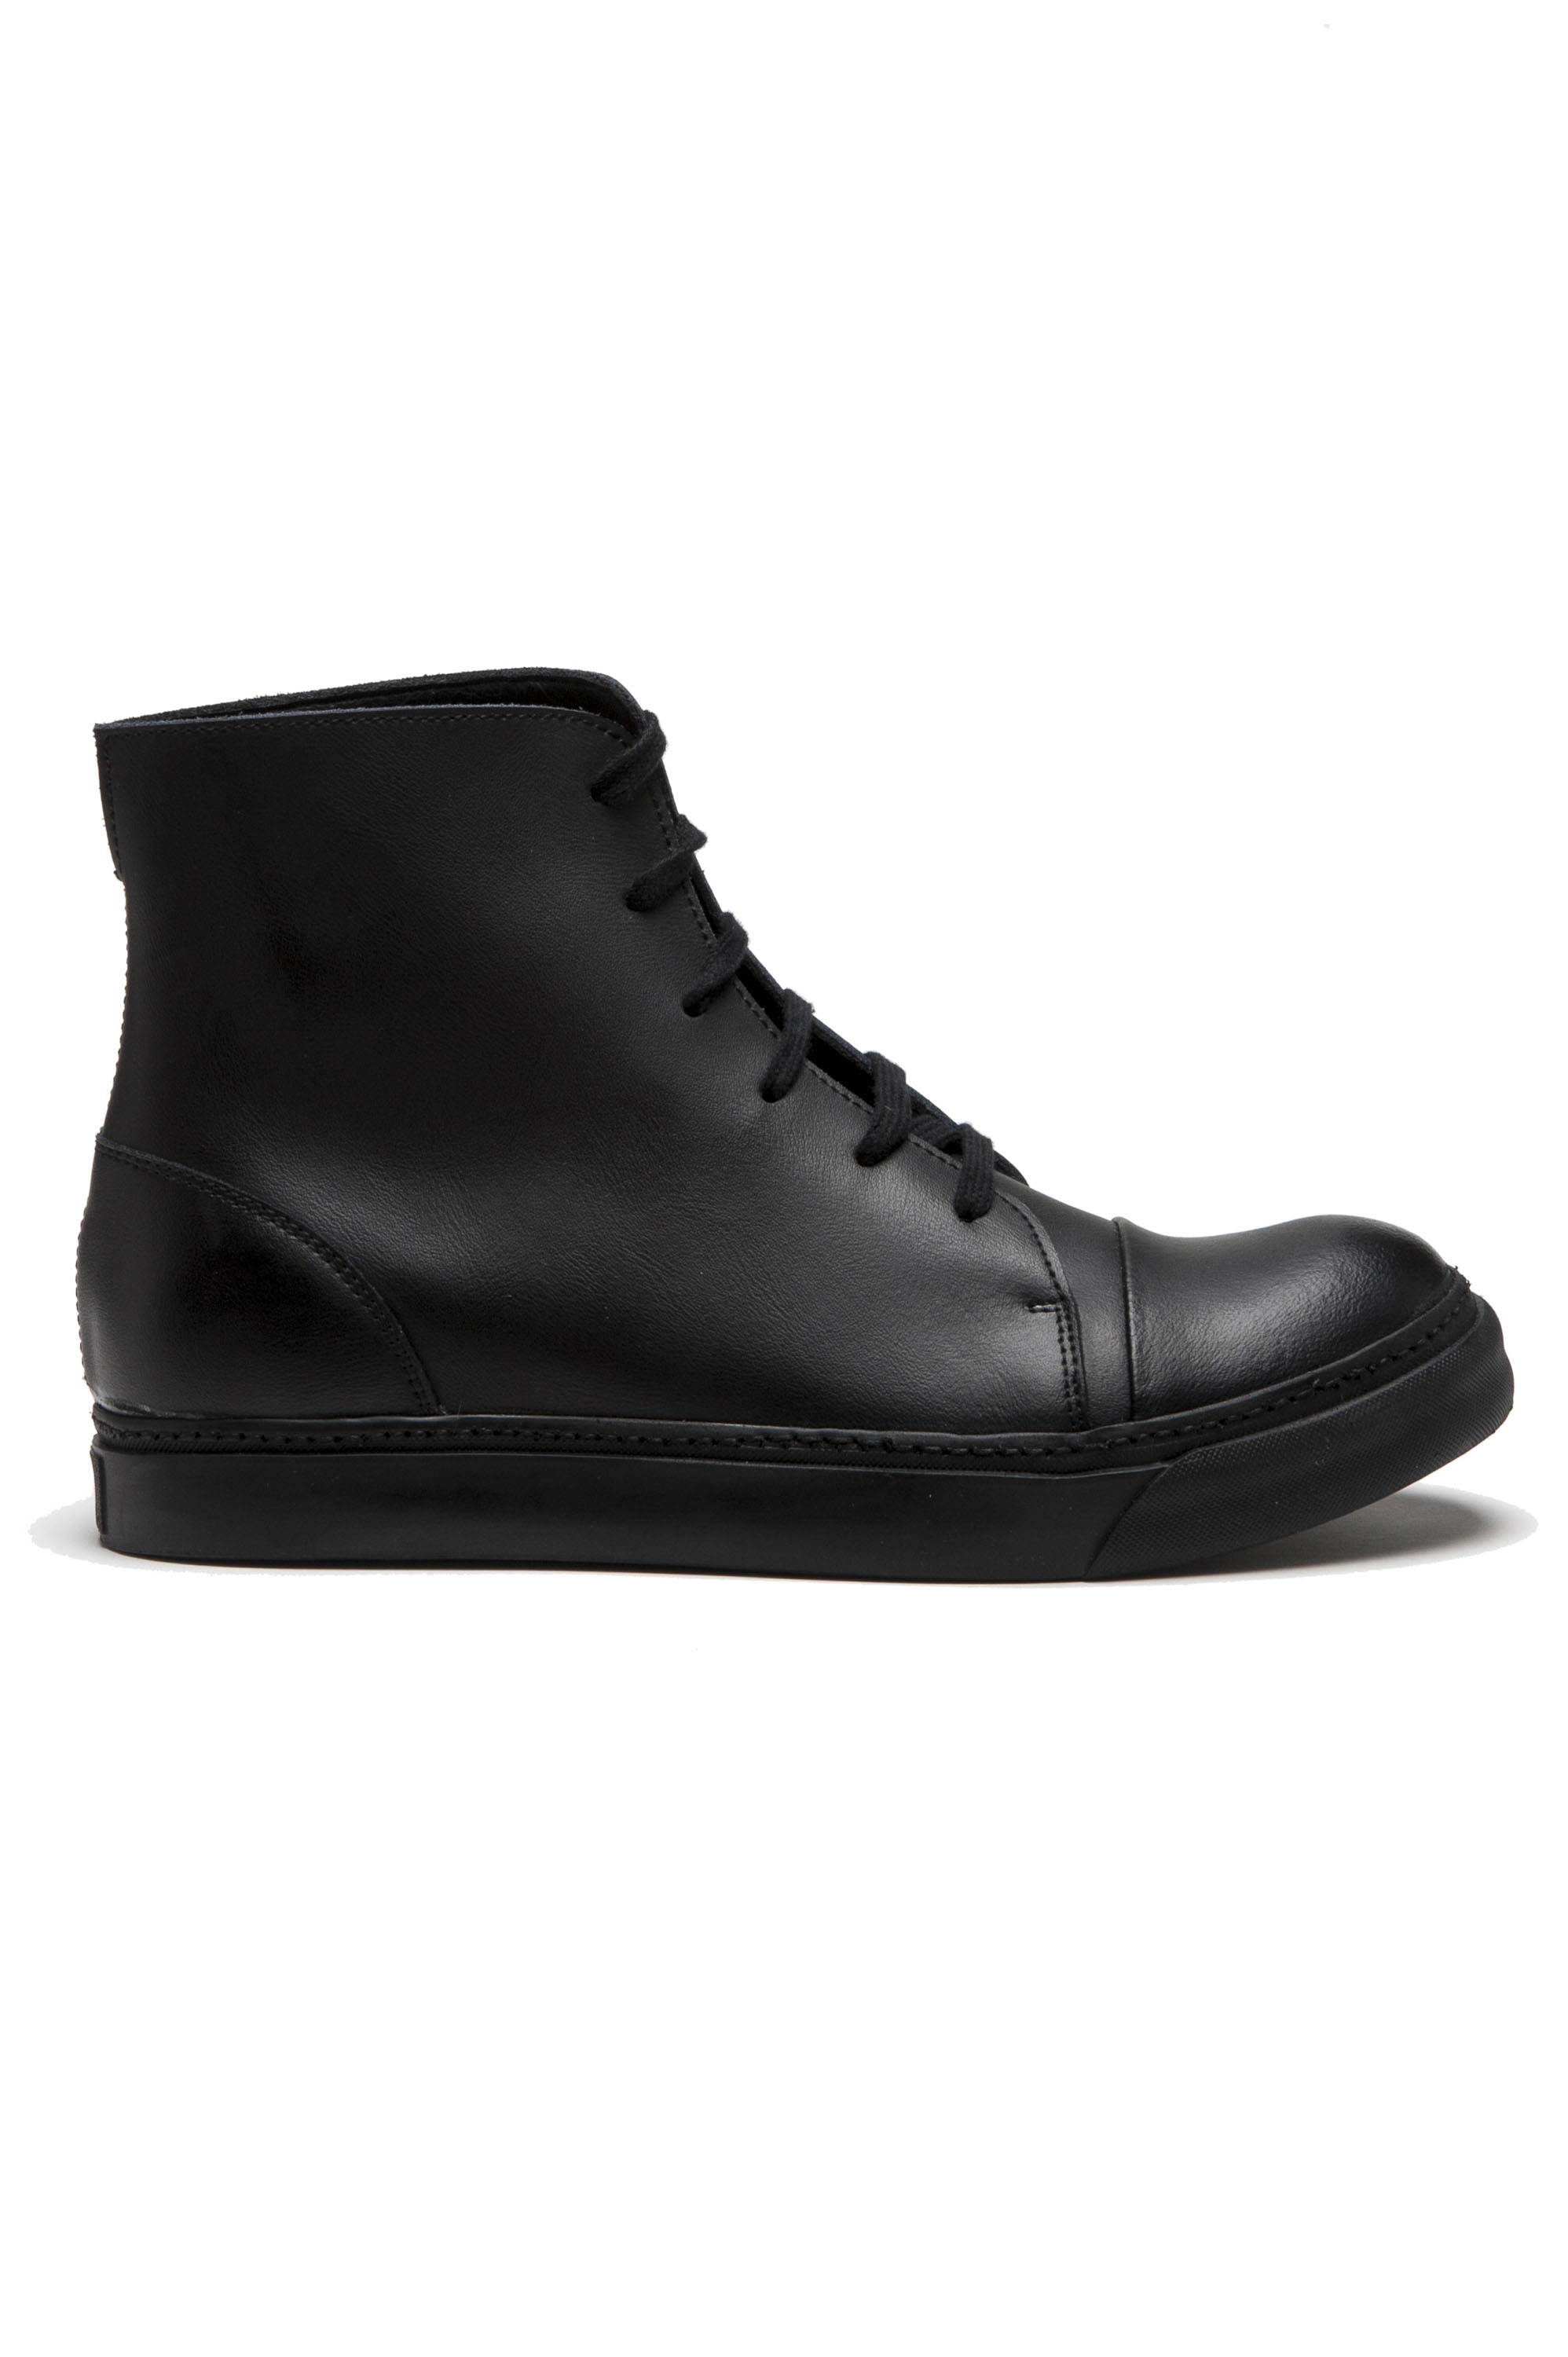 SBU 01518 黒いカーフスキンレザーのハイトップ軍用ブーツ 01